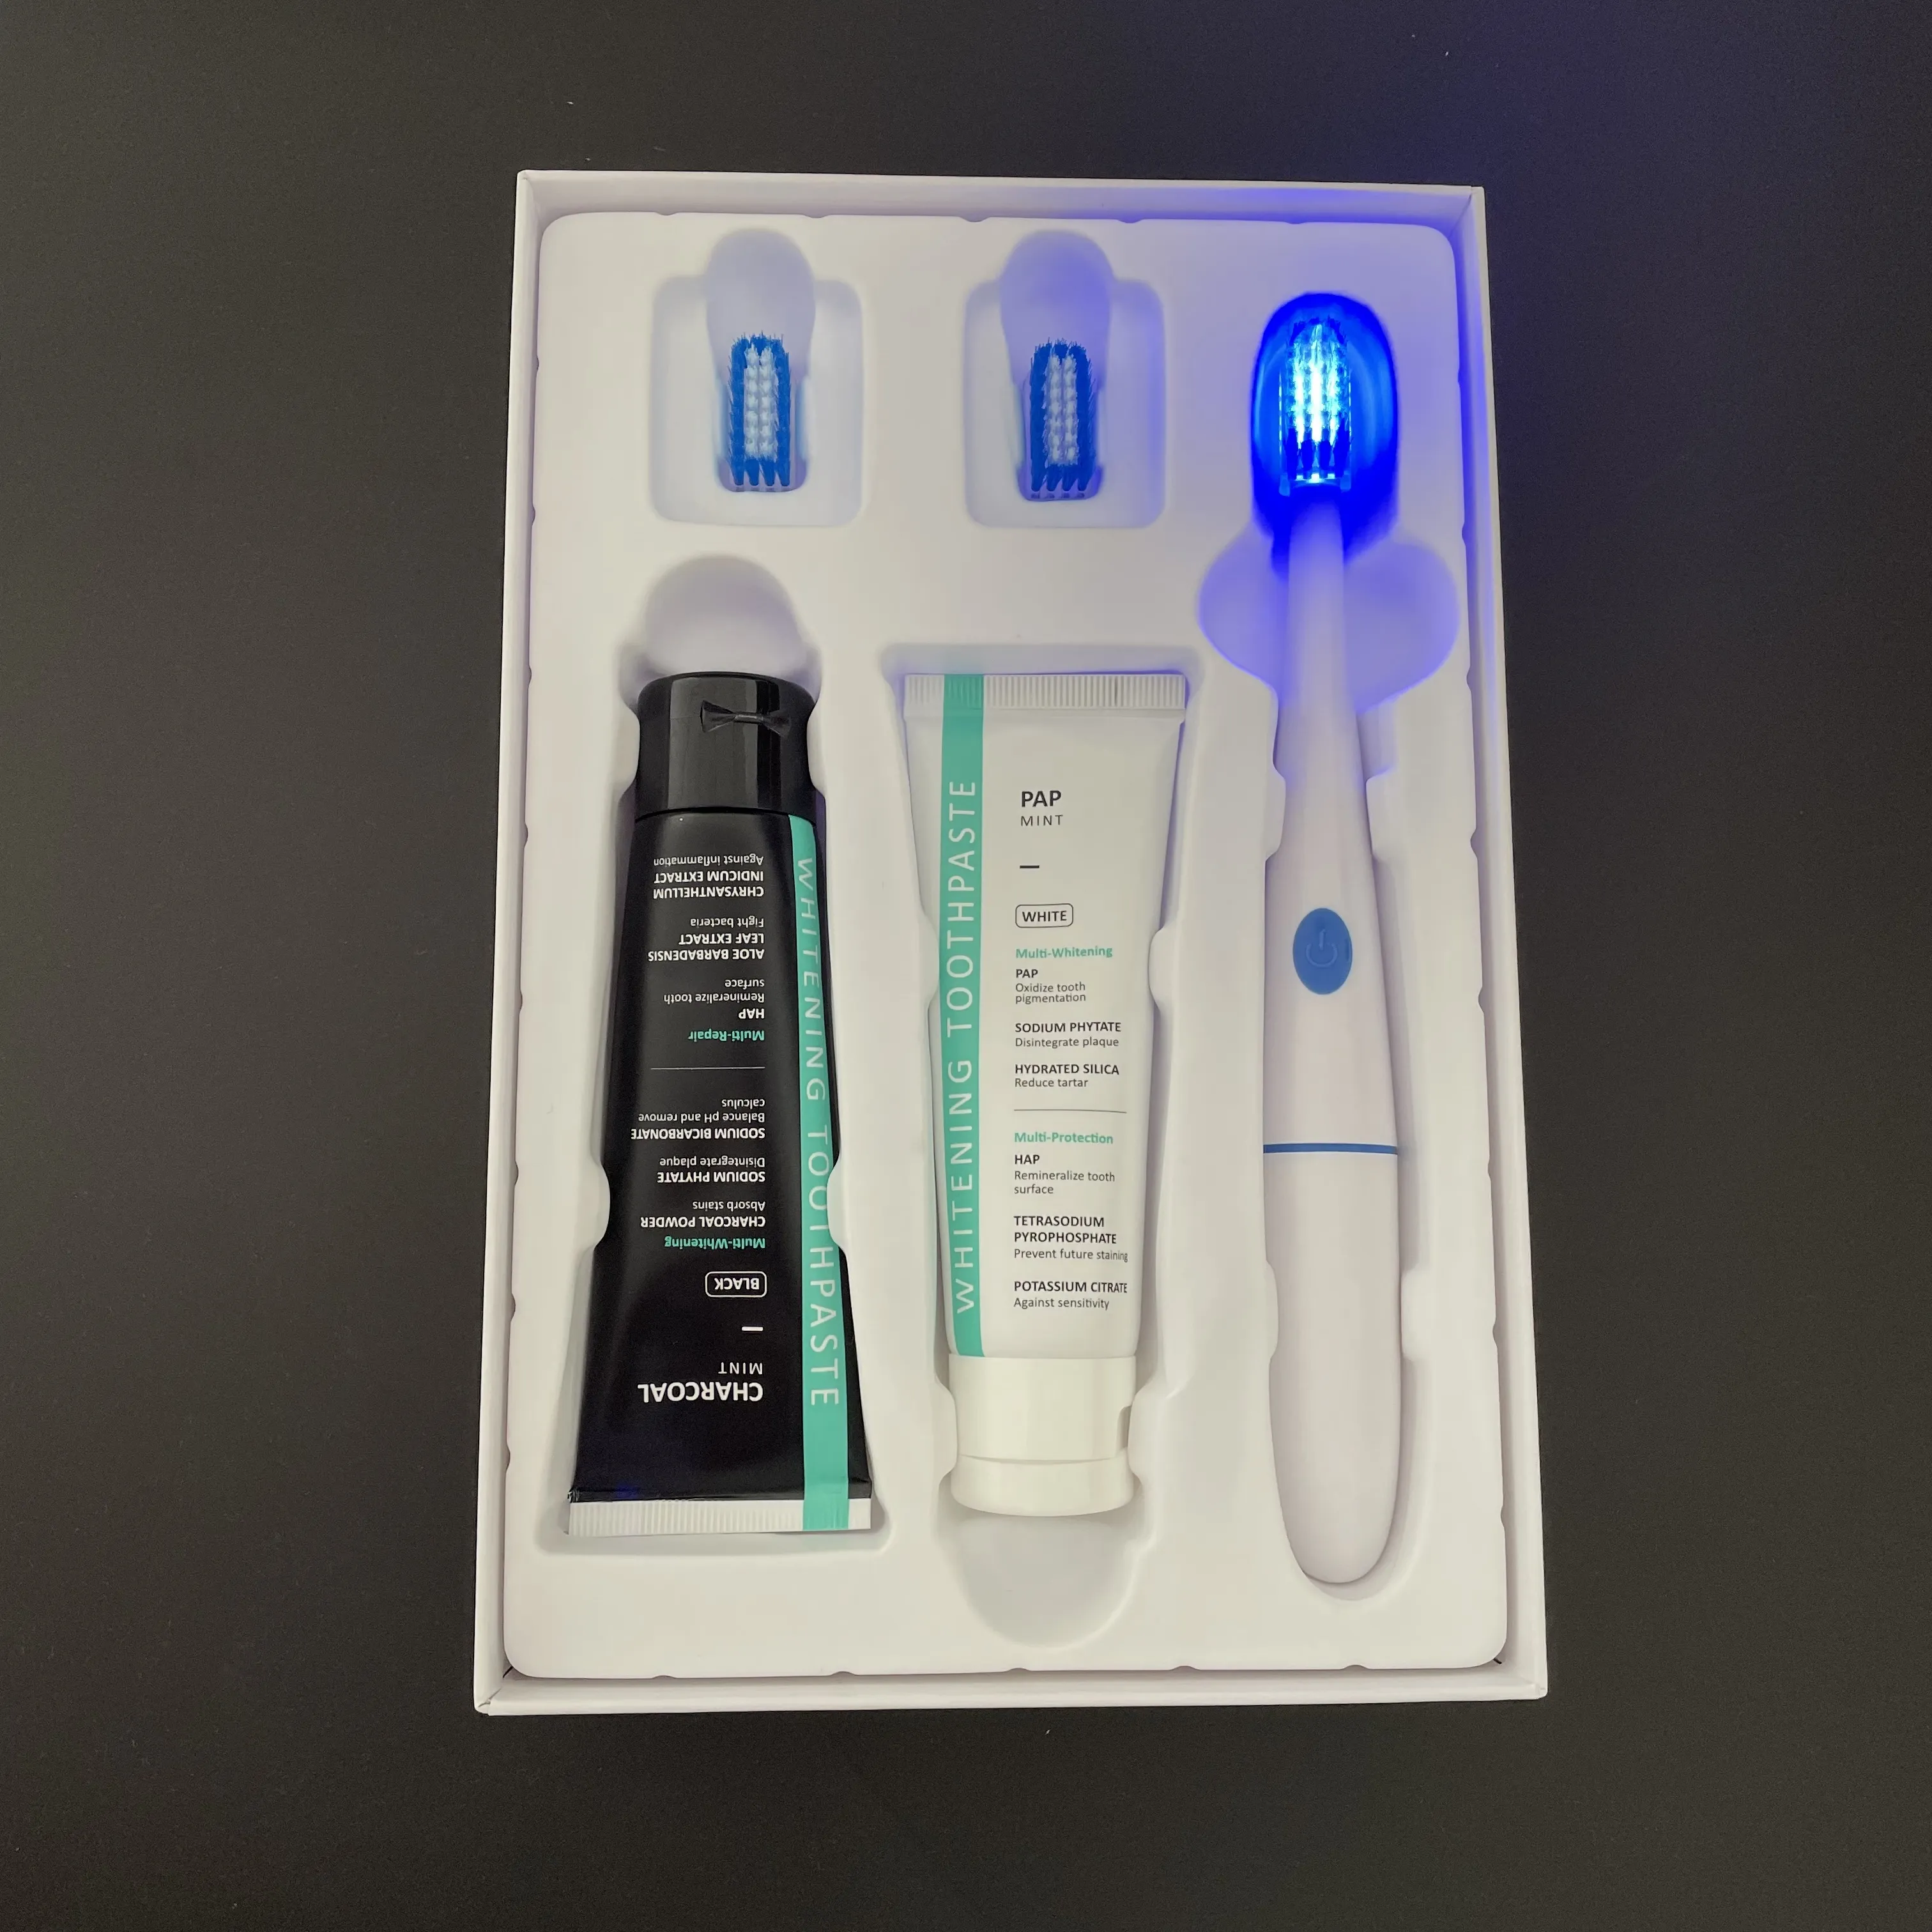 CE Goedkeuren! NIEUWE Patent TANDENBORSTEL Oral Care UV Licht voor Whitening Tanden